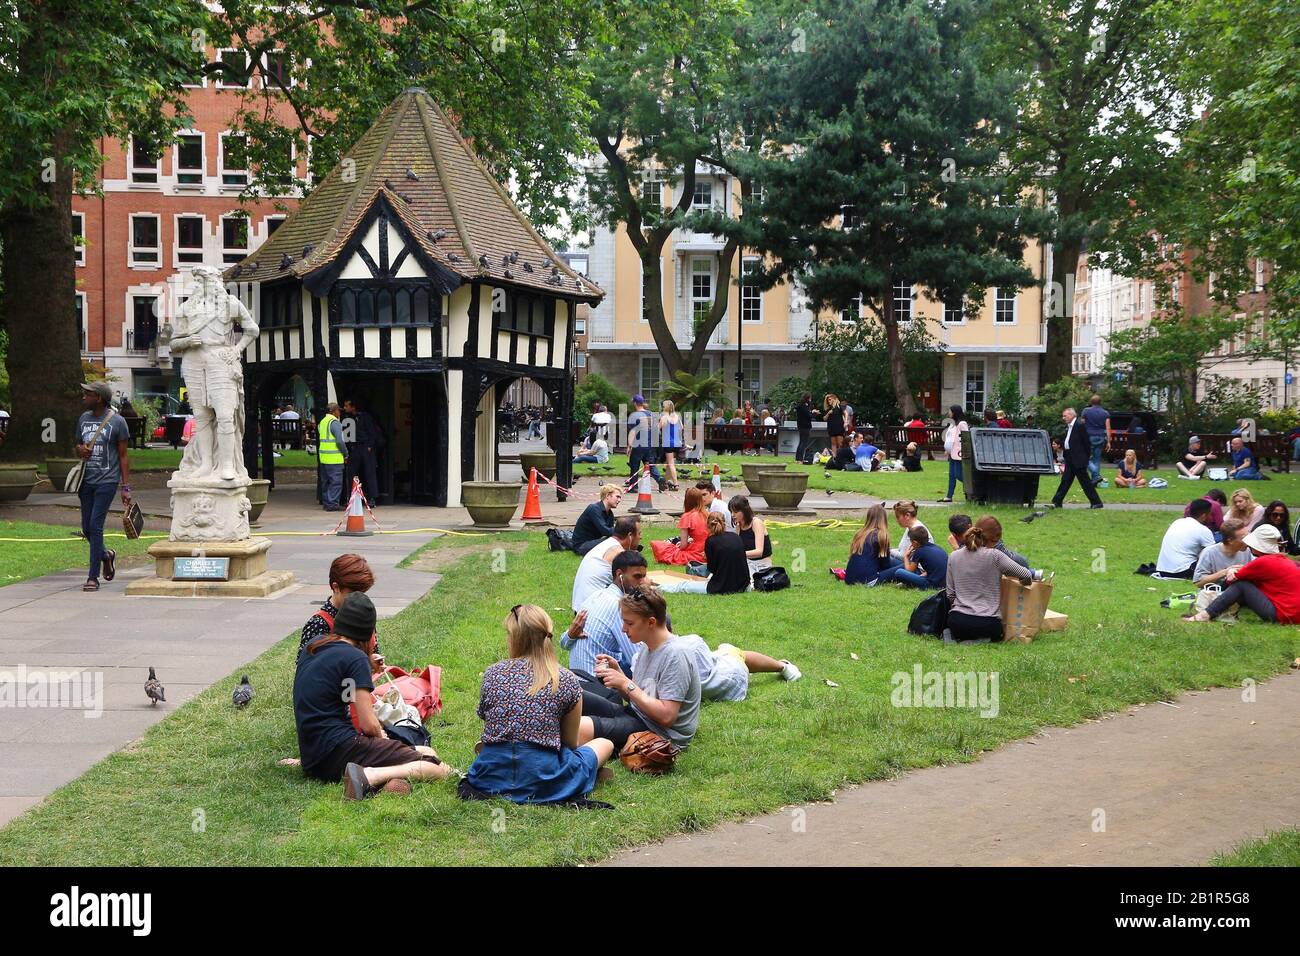 Londra, Regno Unito - 9 LUGLIO 2016: Le persone visitano il parco di Soho Square a Londra, Regno Unito. Londra è la città più popolosa del Regno Unito con 13 milioni di persone vivide Foto Stock